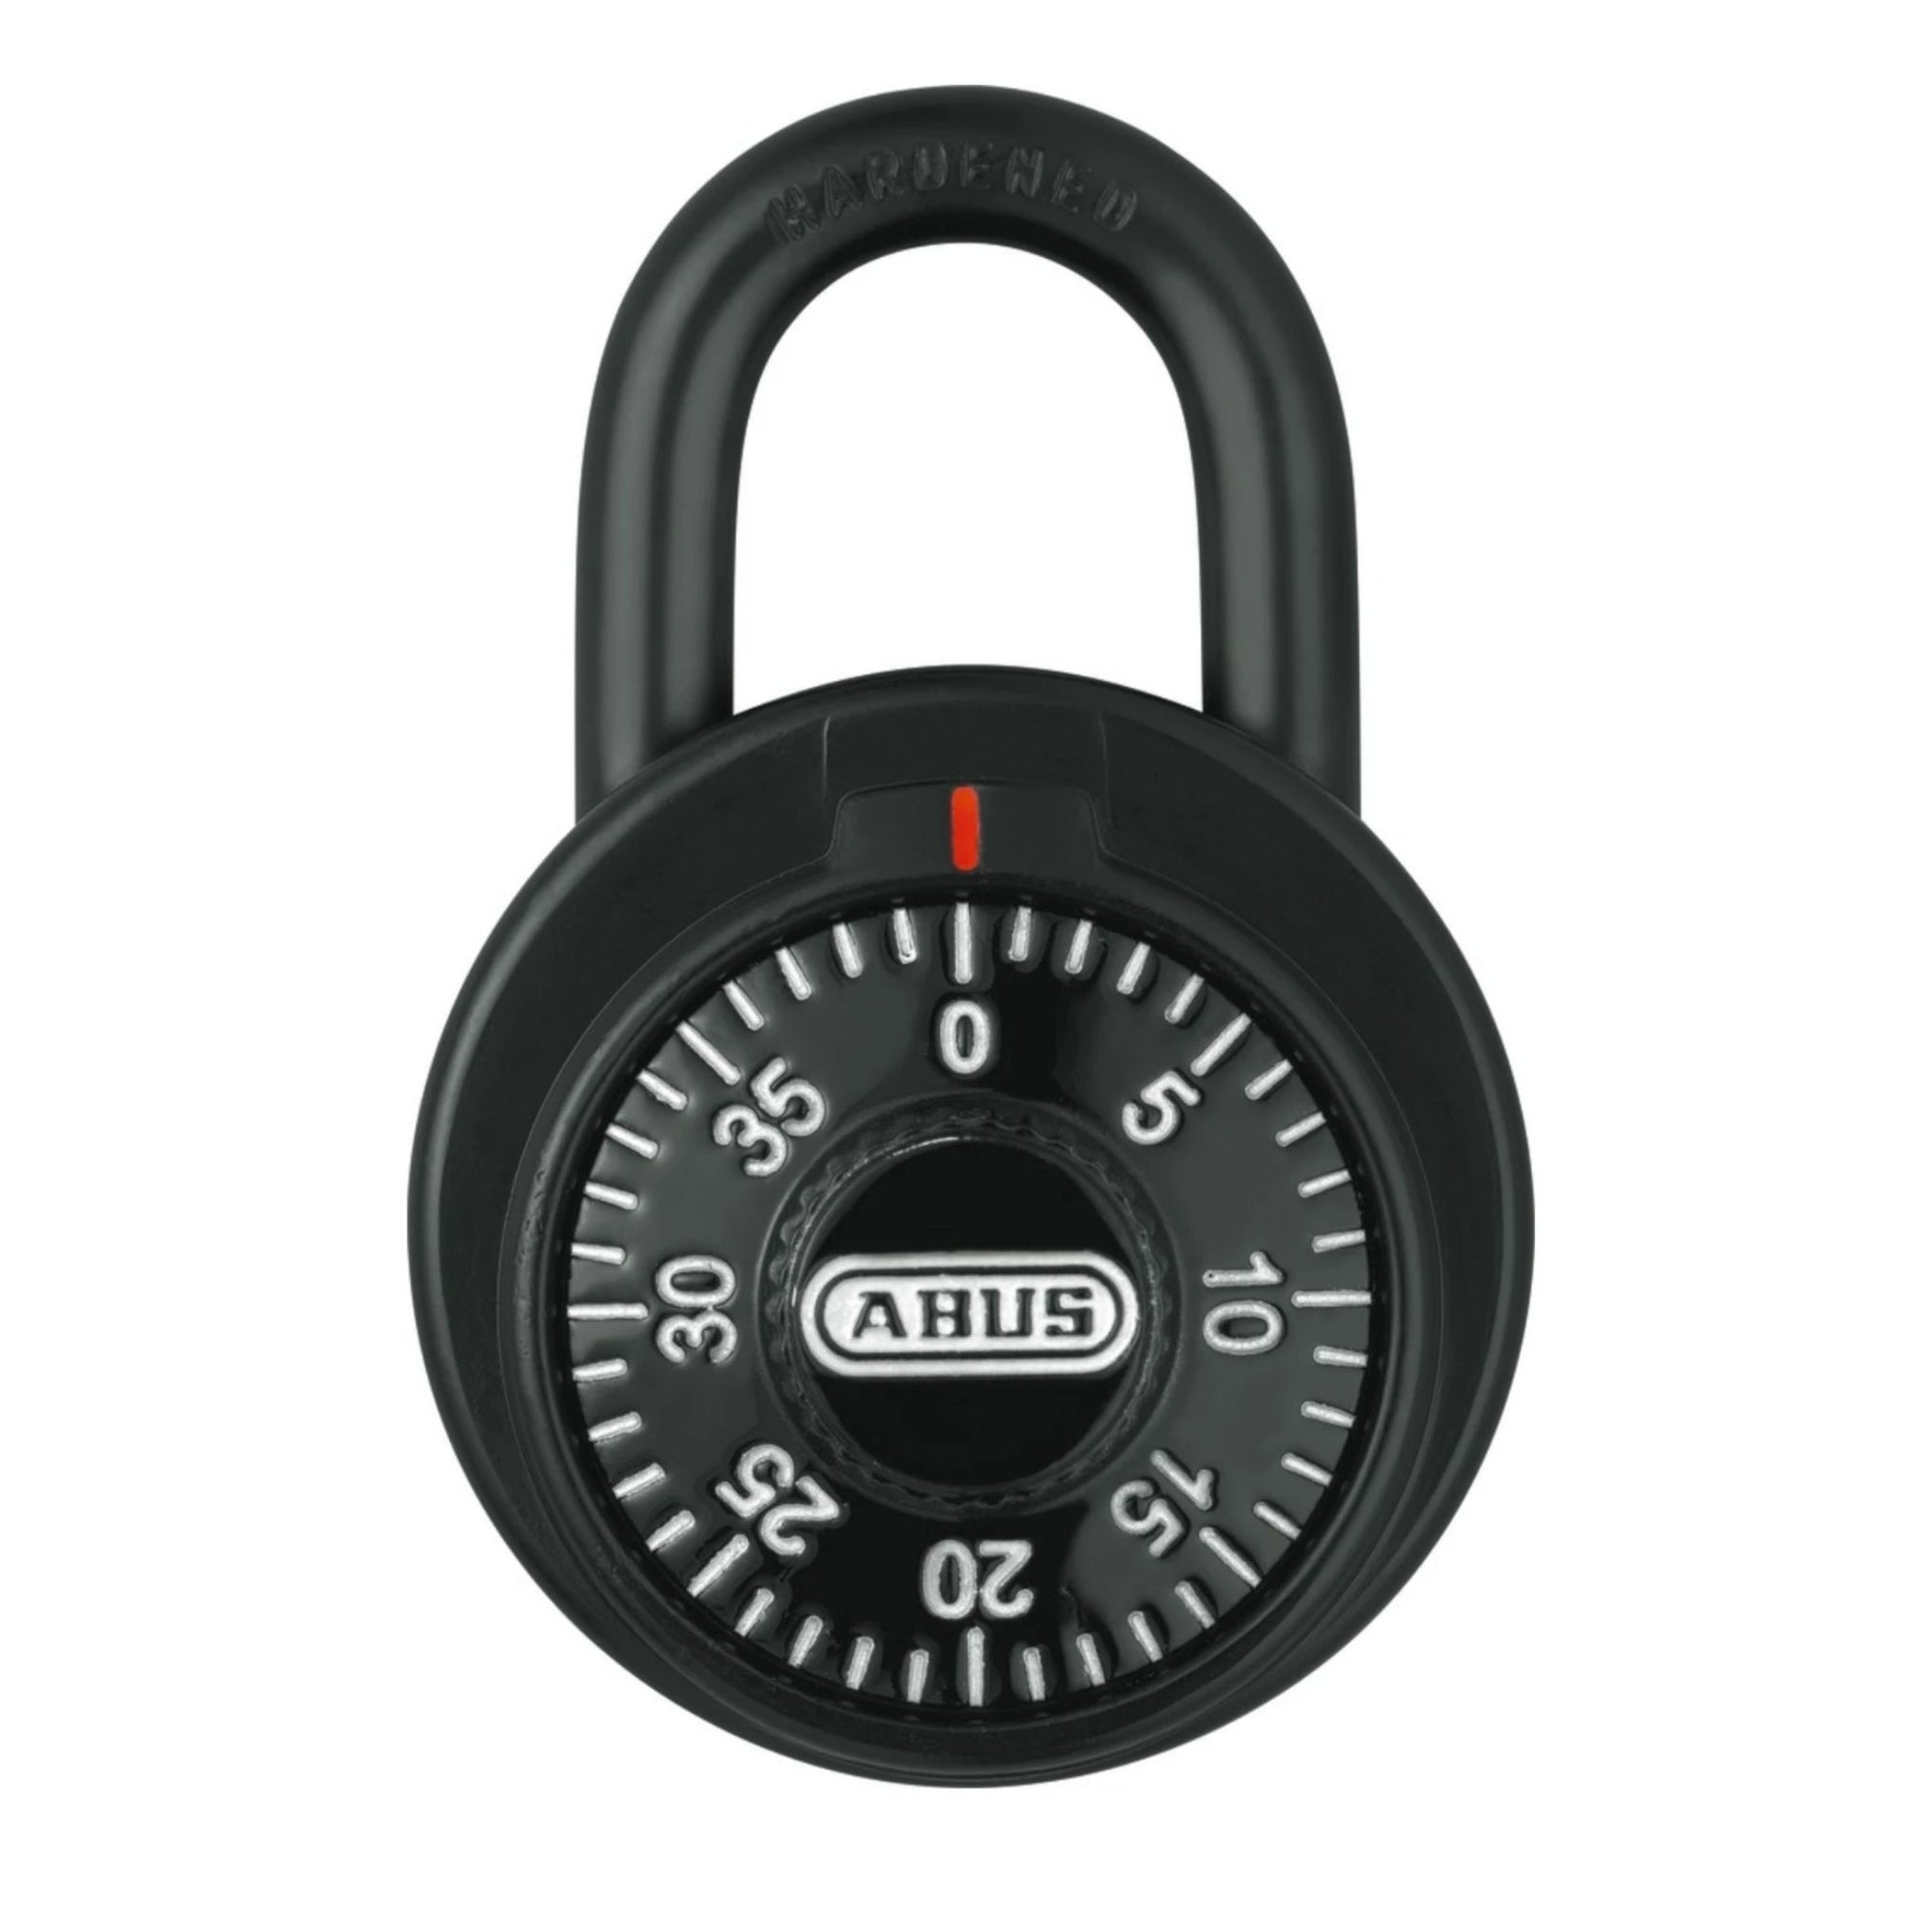 Abus 78/50 KC KA 502A Black Locker Padlock with Key Control Matched to Key Number KA502A - The Lock Source